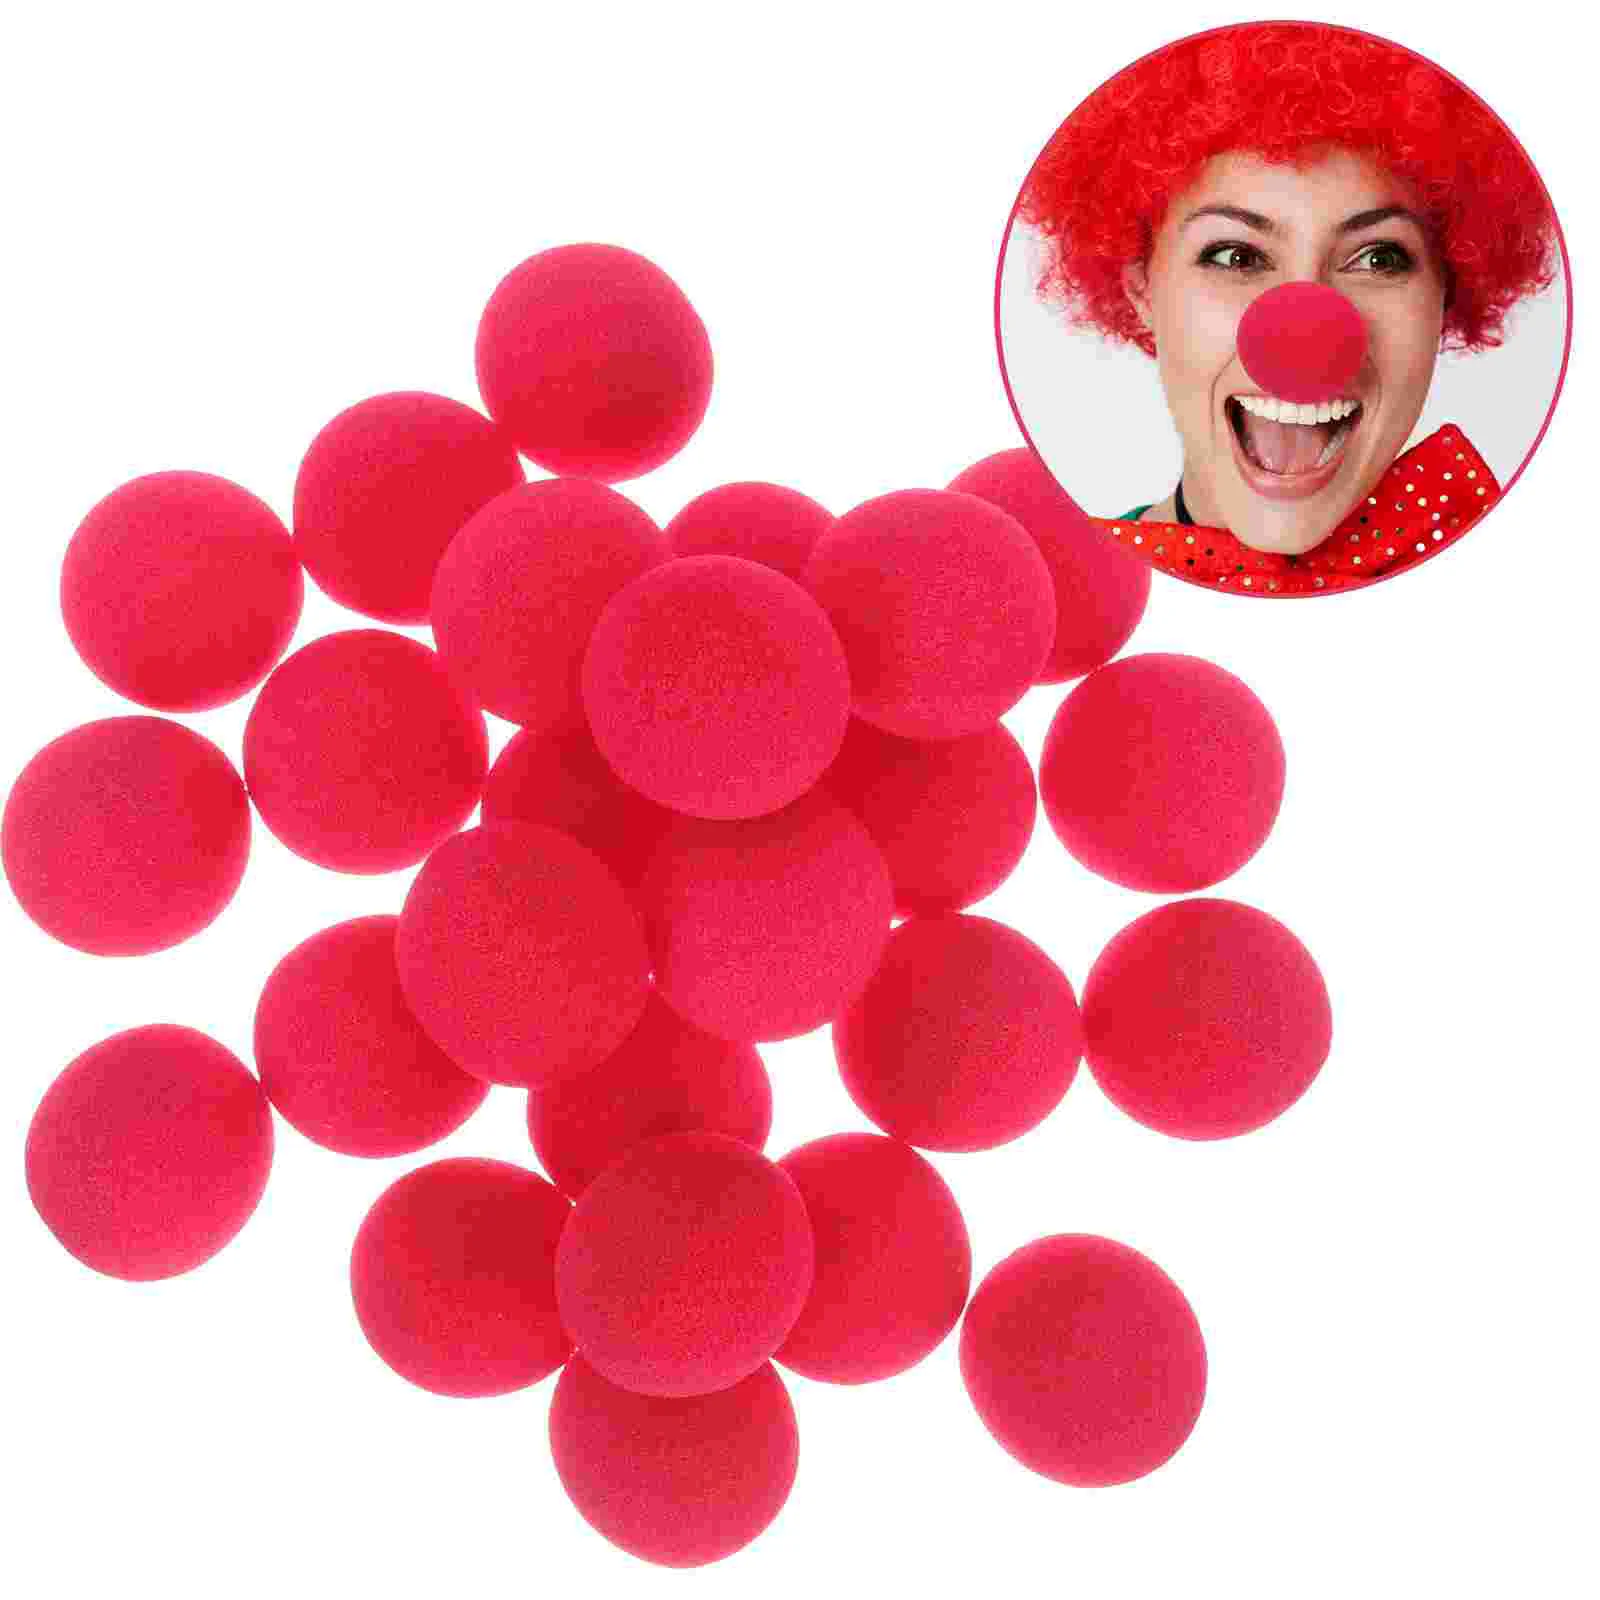 

25 шт. пенопластовая Карнавальная губка для носа компактный реквизит для клоуна красная маленькая игрушка для косплея цирковые носы декоративные портативные